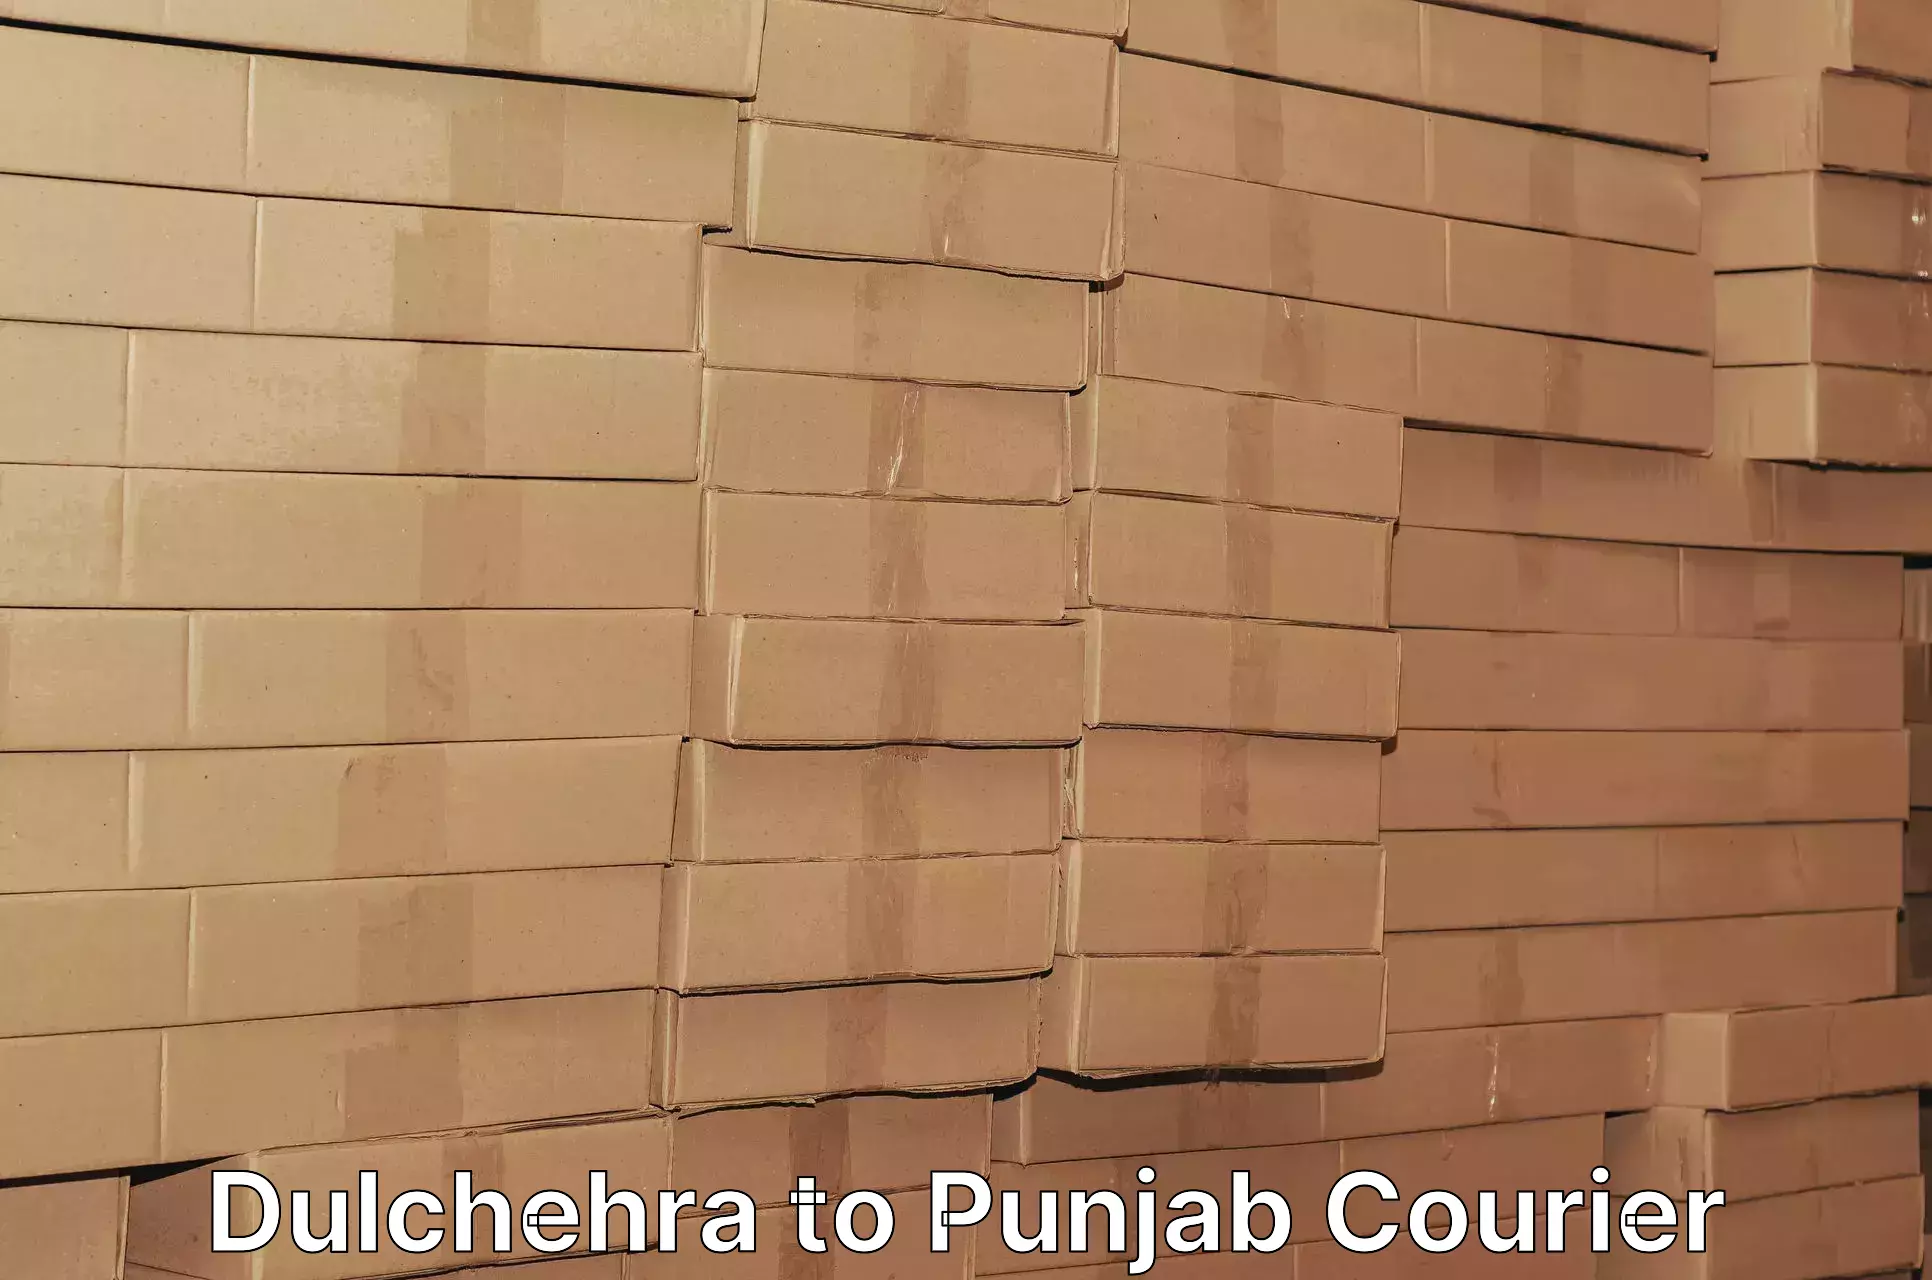 Reliable parcel services Dulchehra to Abohar